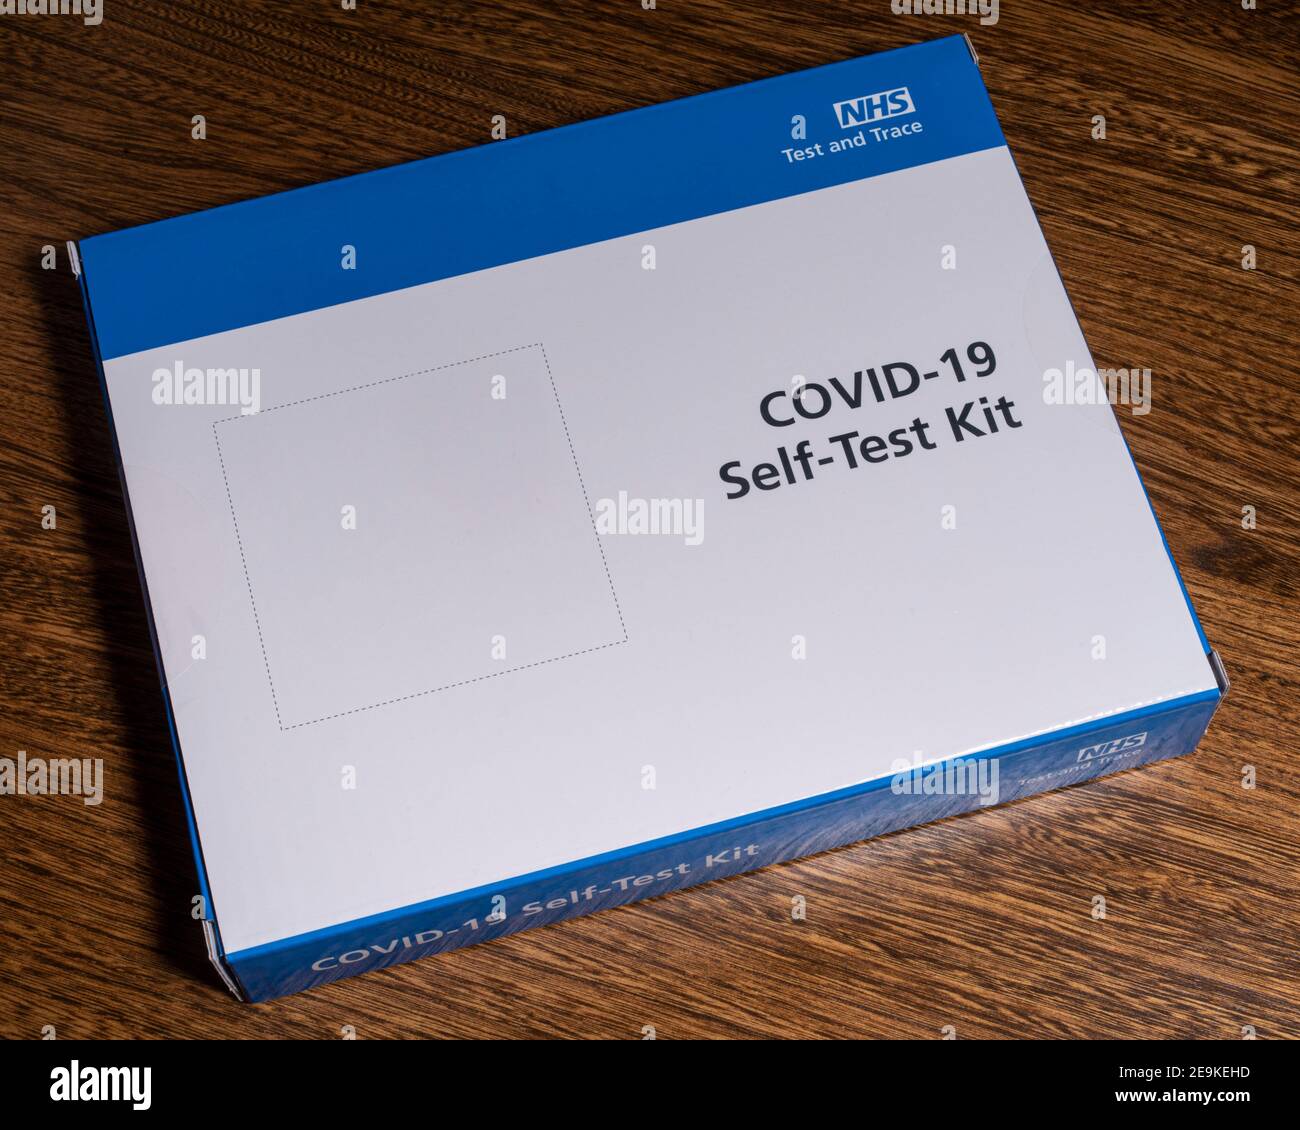 Londra, Regno Unito - 29 gennaio 2021: Primo piano di un kit di test automatico COVID-19 non aperto, o kit di test domestico, rilasciato dall'NHS. Foto Stock